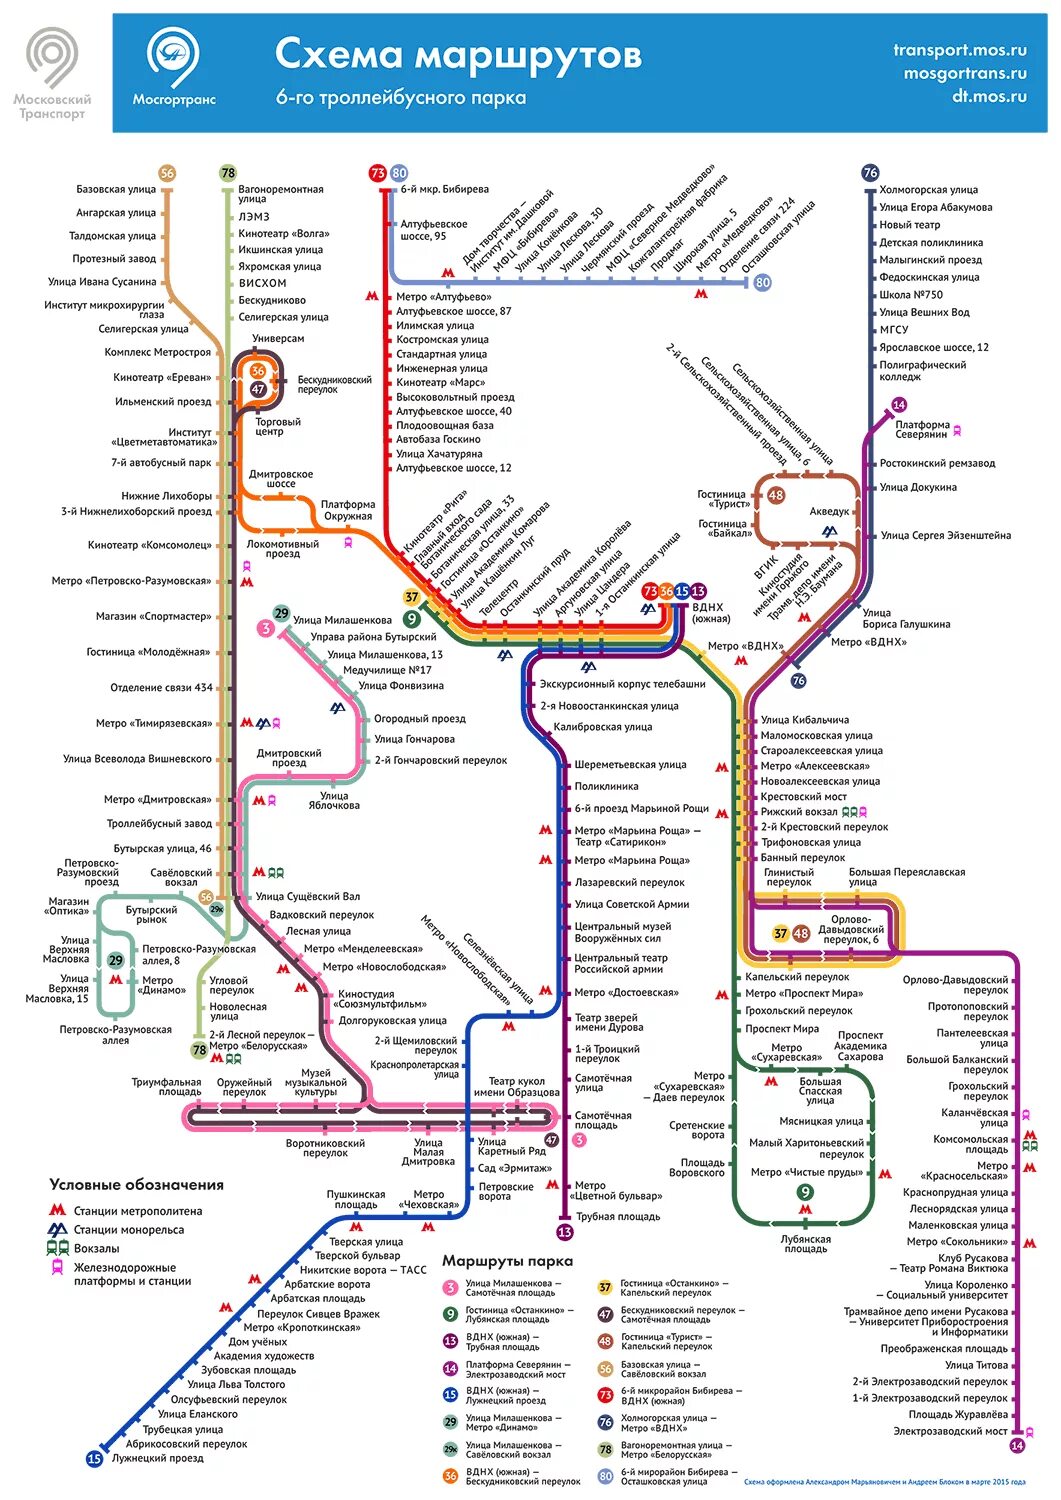 Карта движения автобусов в москве. Схема маршрутов троллейбуса троллейбусный парк 1 СПБ. Схема маршрутов троллейбусов Москвы. Схема маршрутов троллейбусов 7 троллейбусного парка Москва. Схема маршрутов 2 троллейбусного парка Москвы.